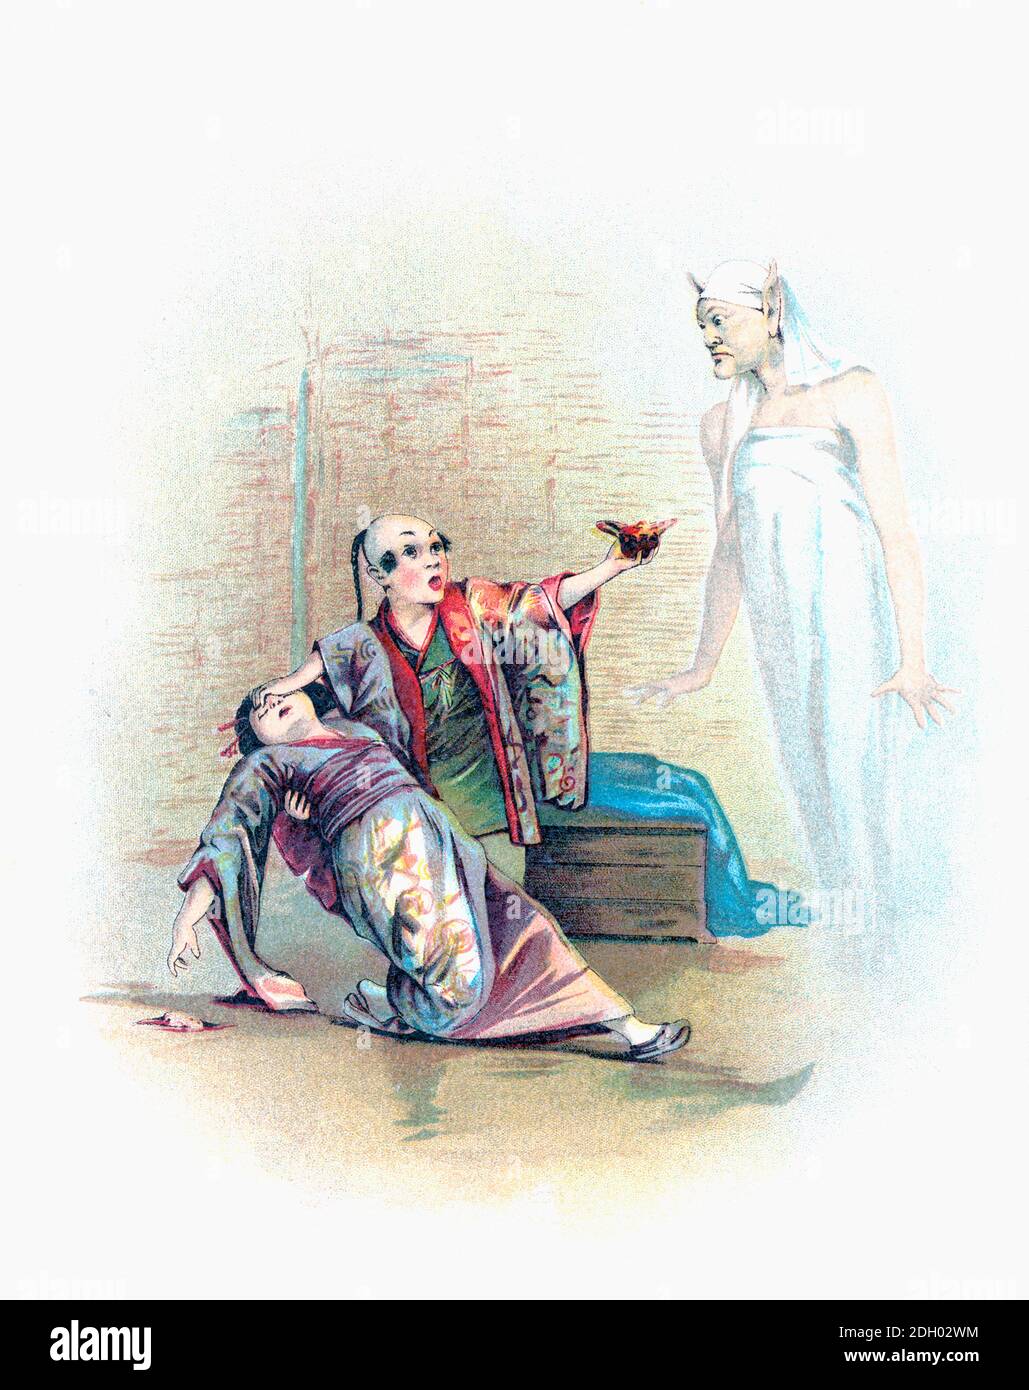 Le génie apparaît de la lampe magique d’Aladdin. Après une illustration de Francis Brundage dans une édition 1898 des Arabian Nights Entertainments. Banque D'Images